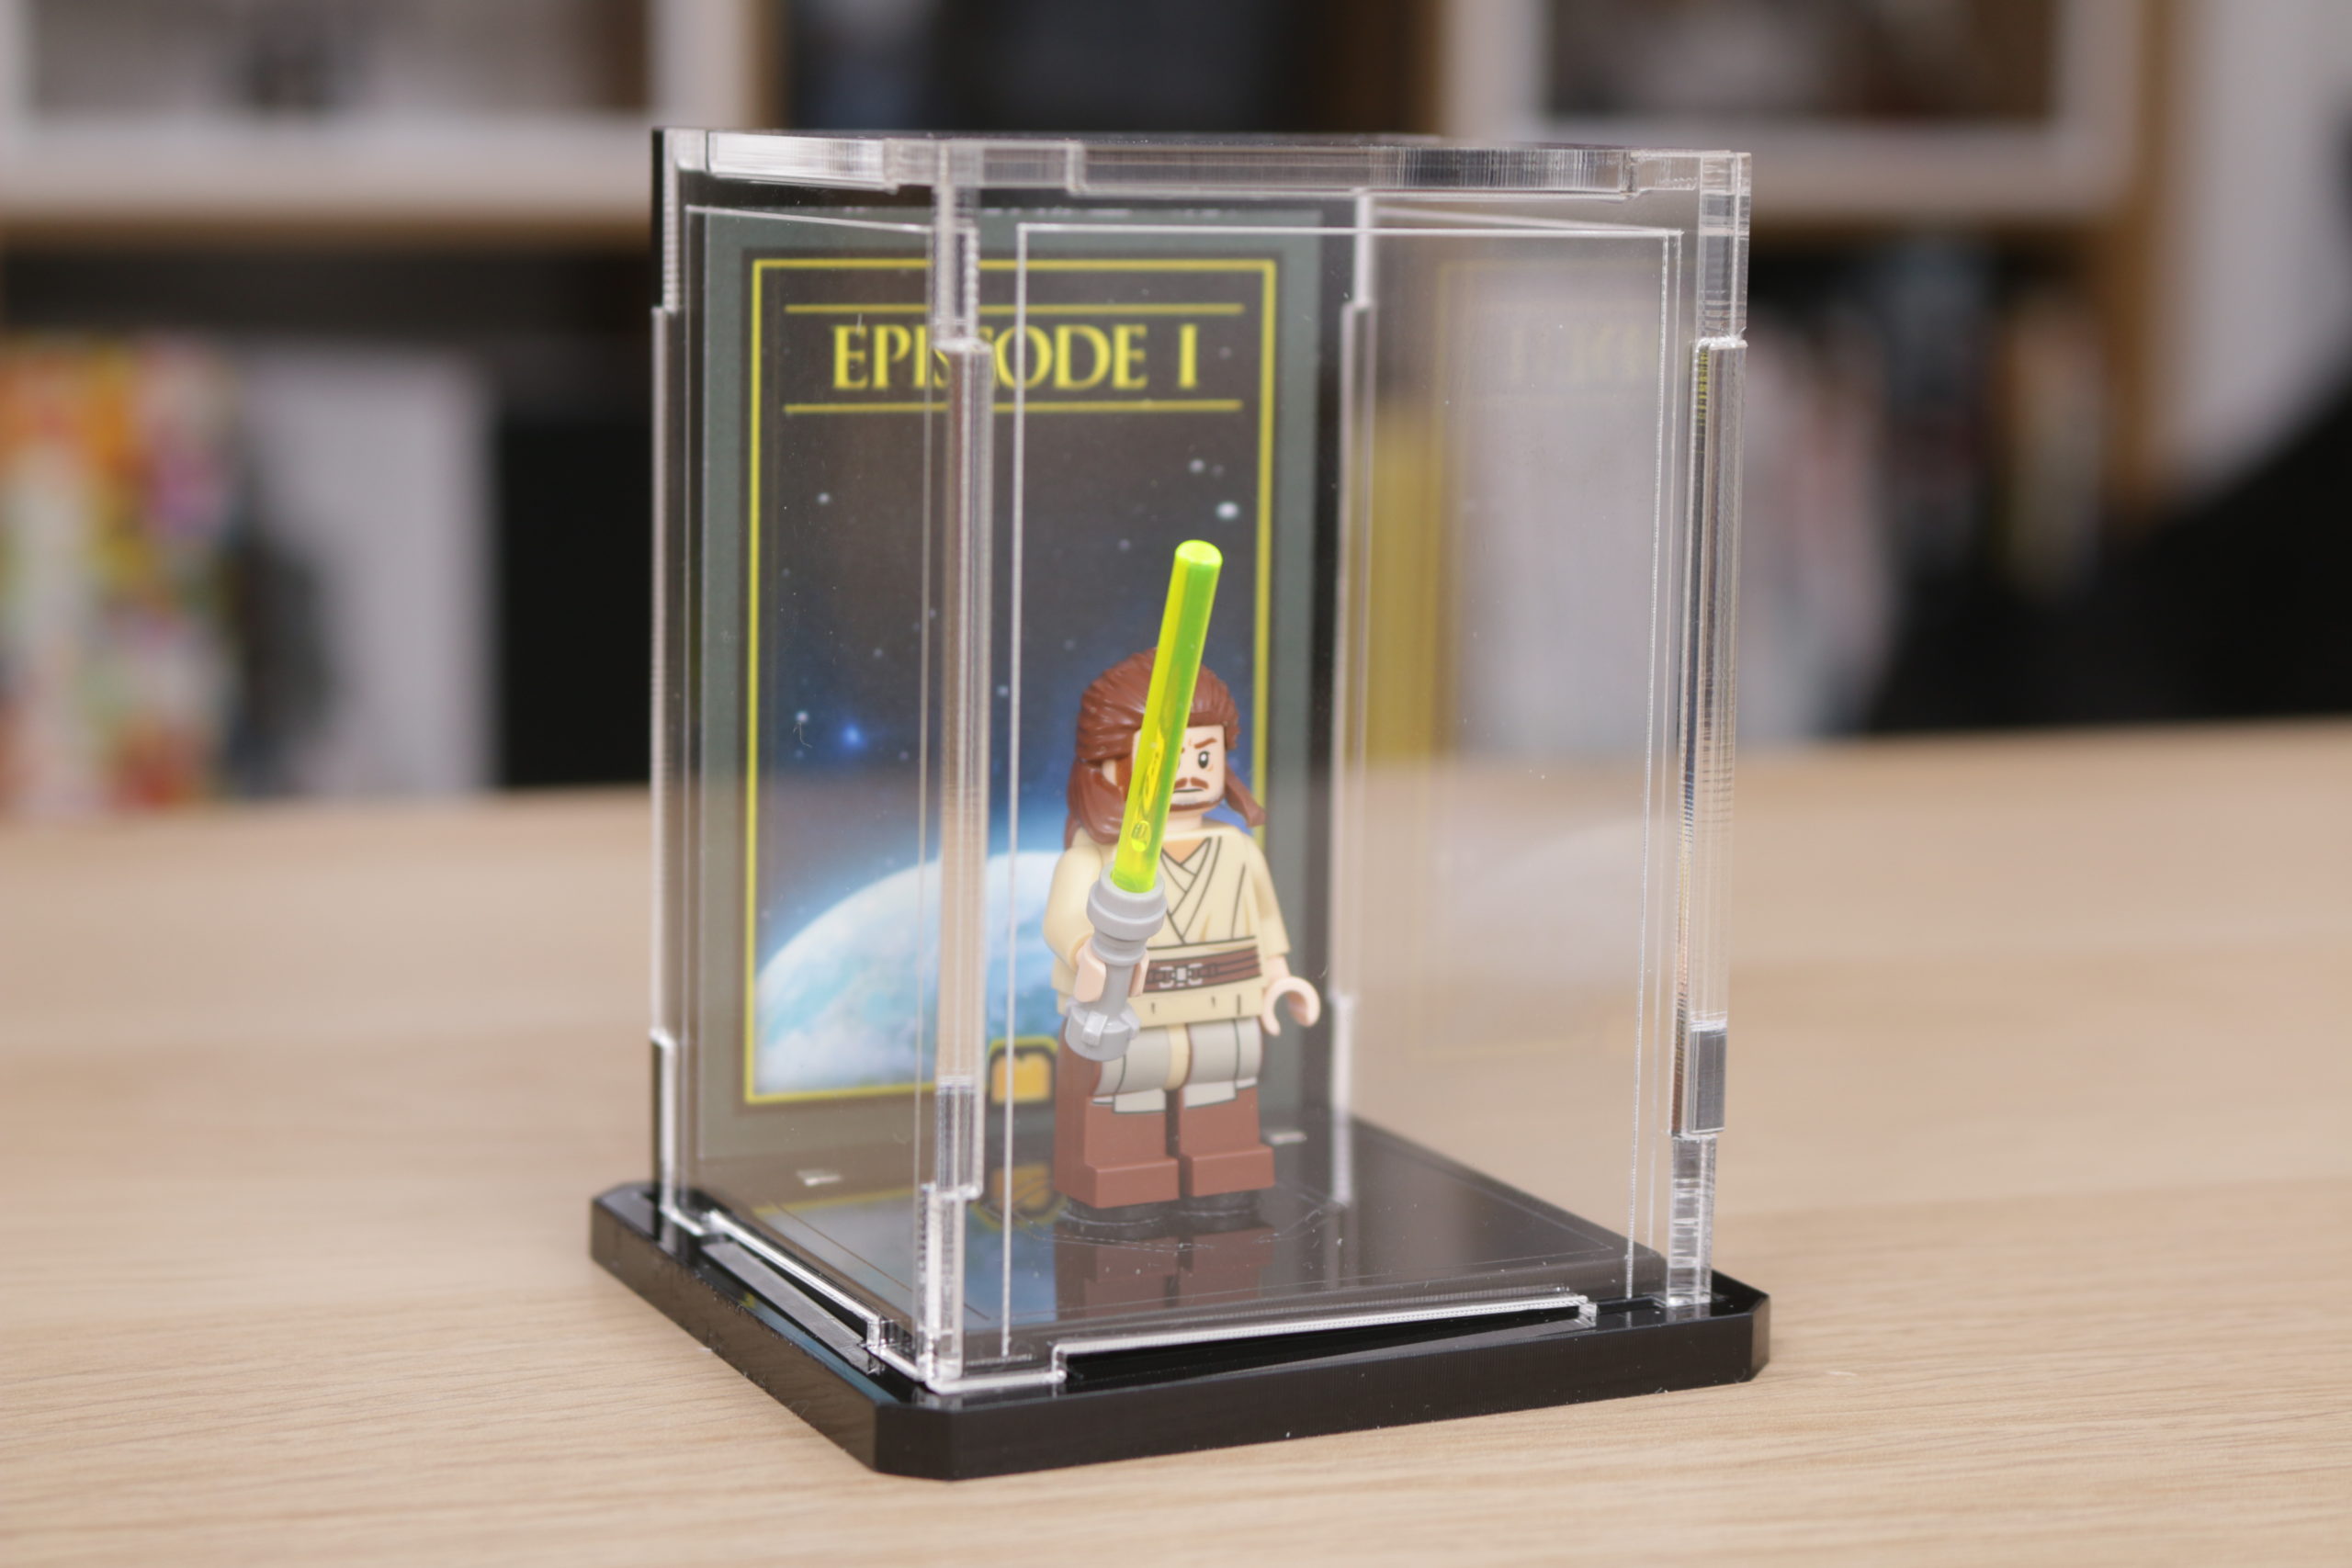 LEGO Vitrine Figurines 8 Cases au meilleur prix sur